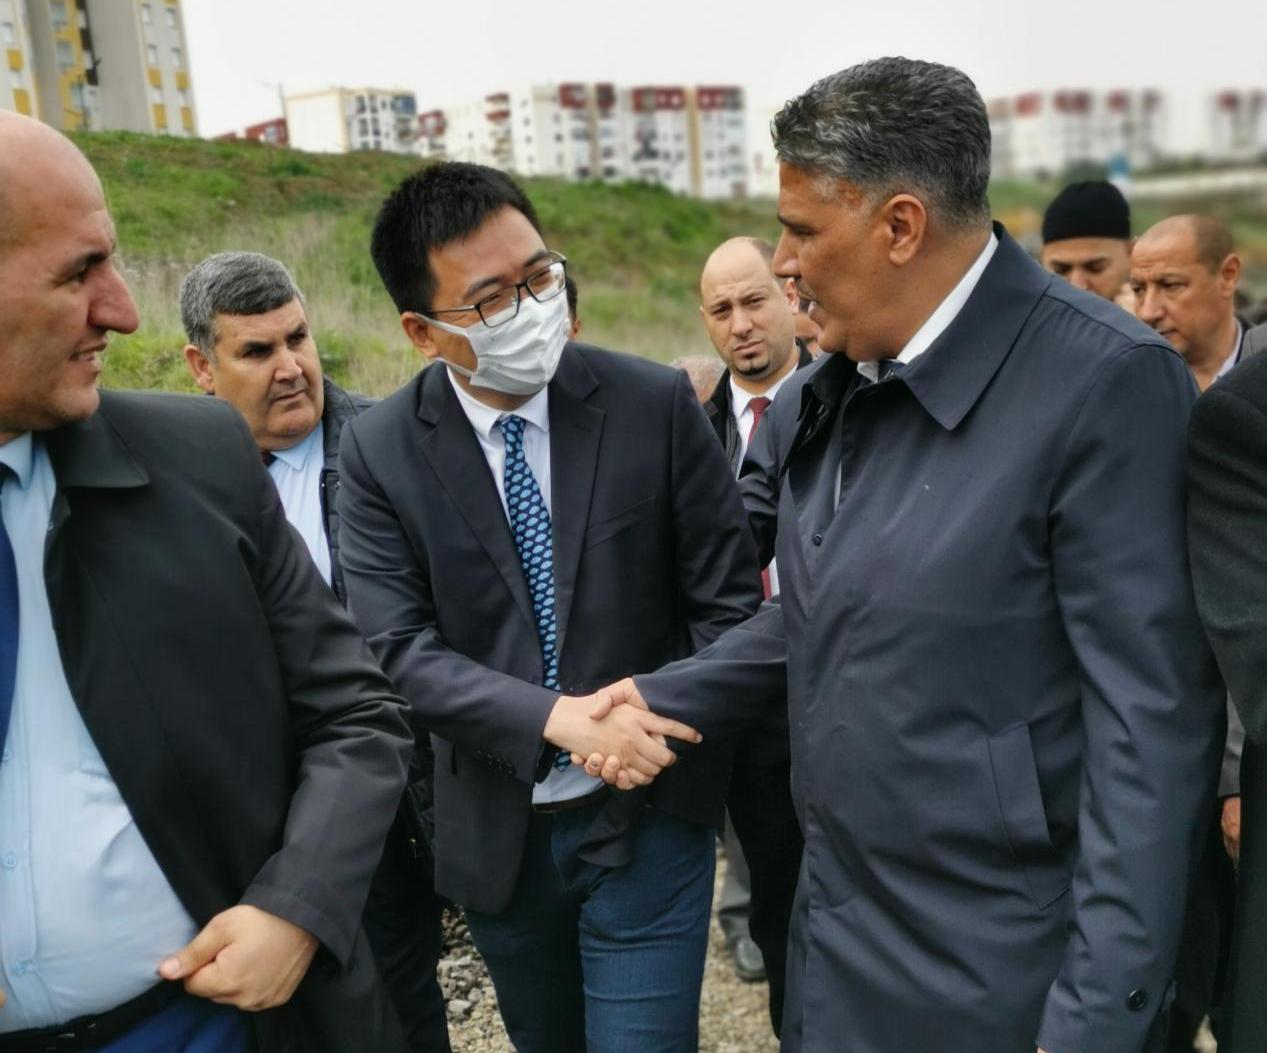 阿尔及利亚住房部部长出席安徽建工堤济乌祖500套住房项目开工典礼